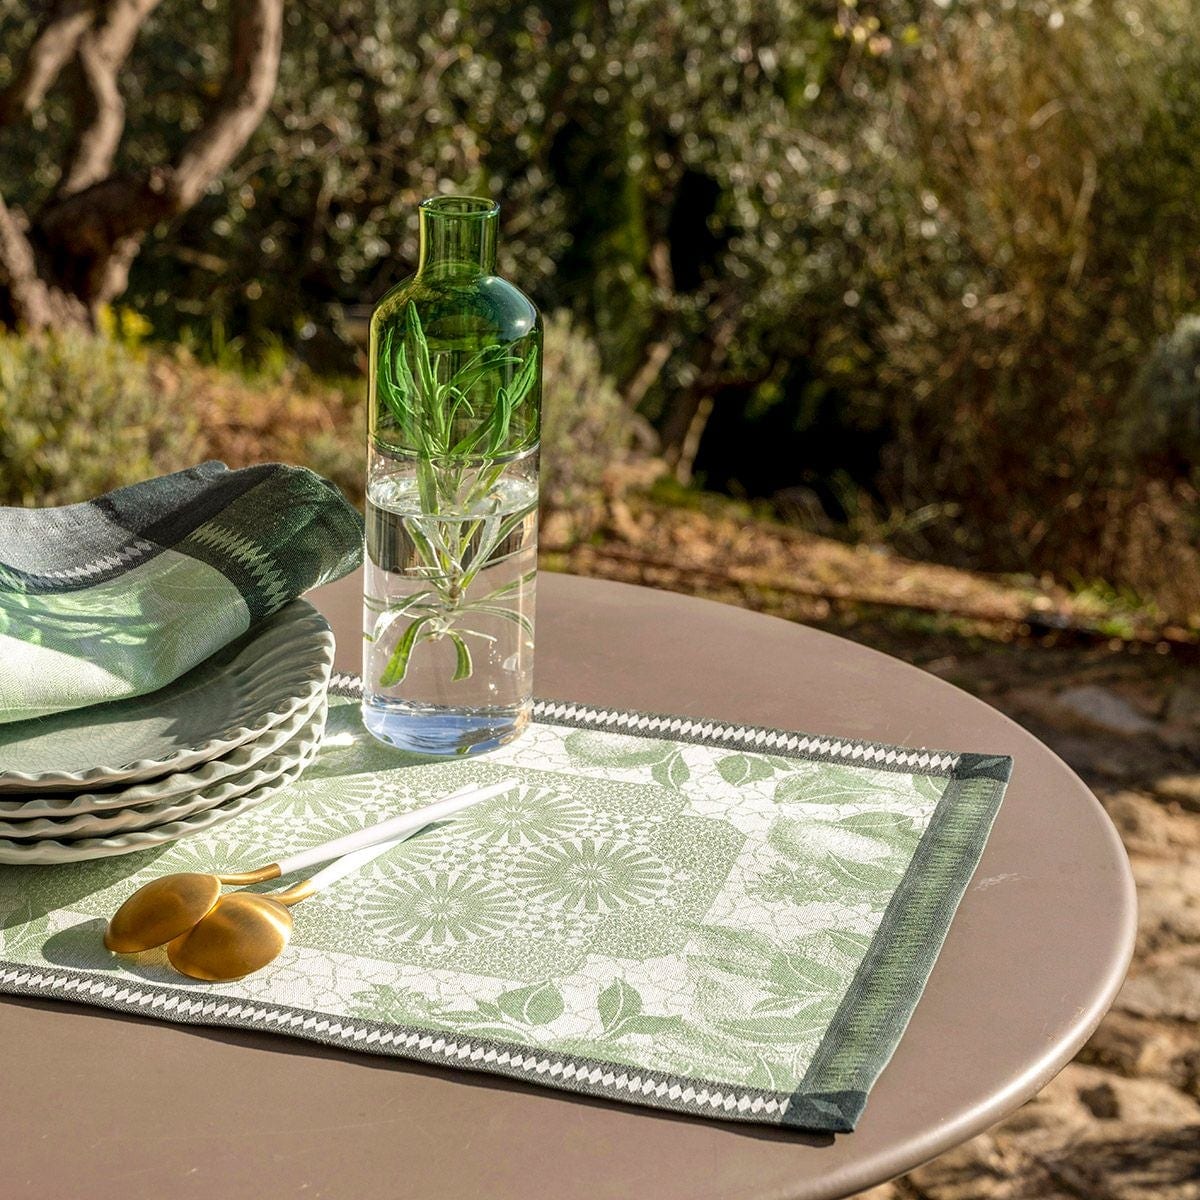 Jardin D’Orient Light Green Table Linens by Le Jacquard Français - Placemats and Napkins - Lifestyle